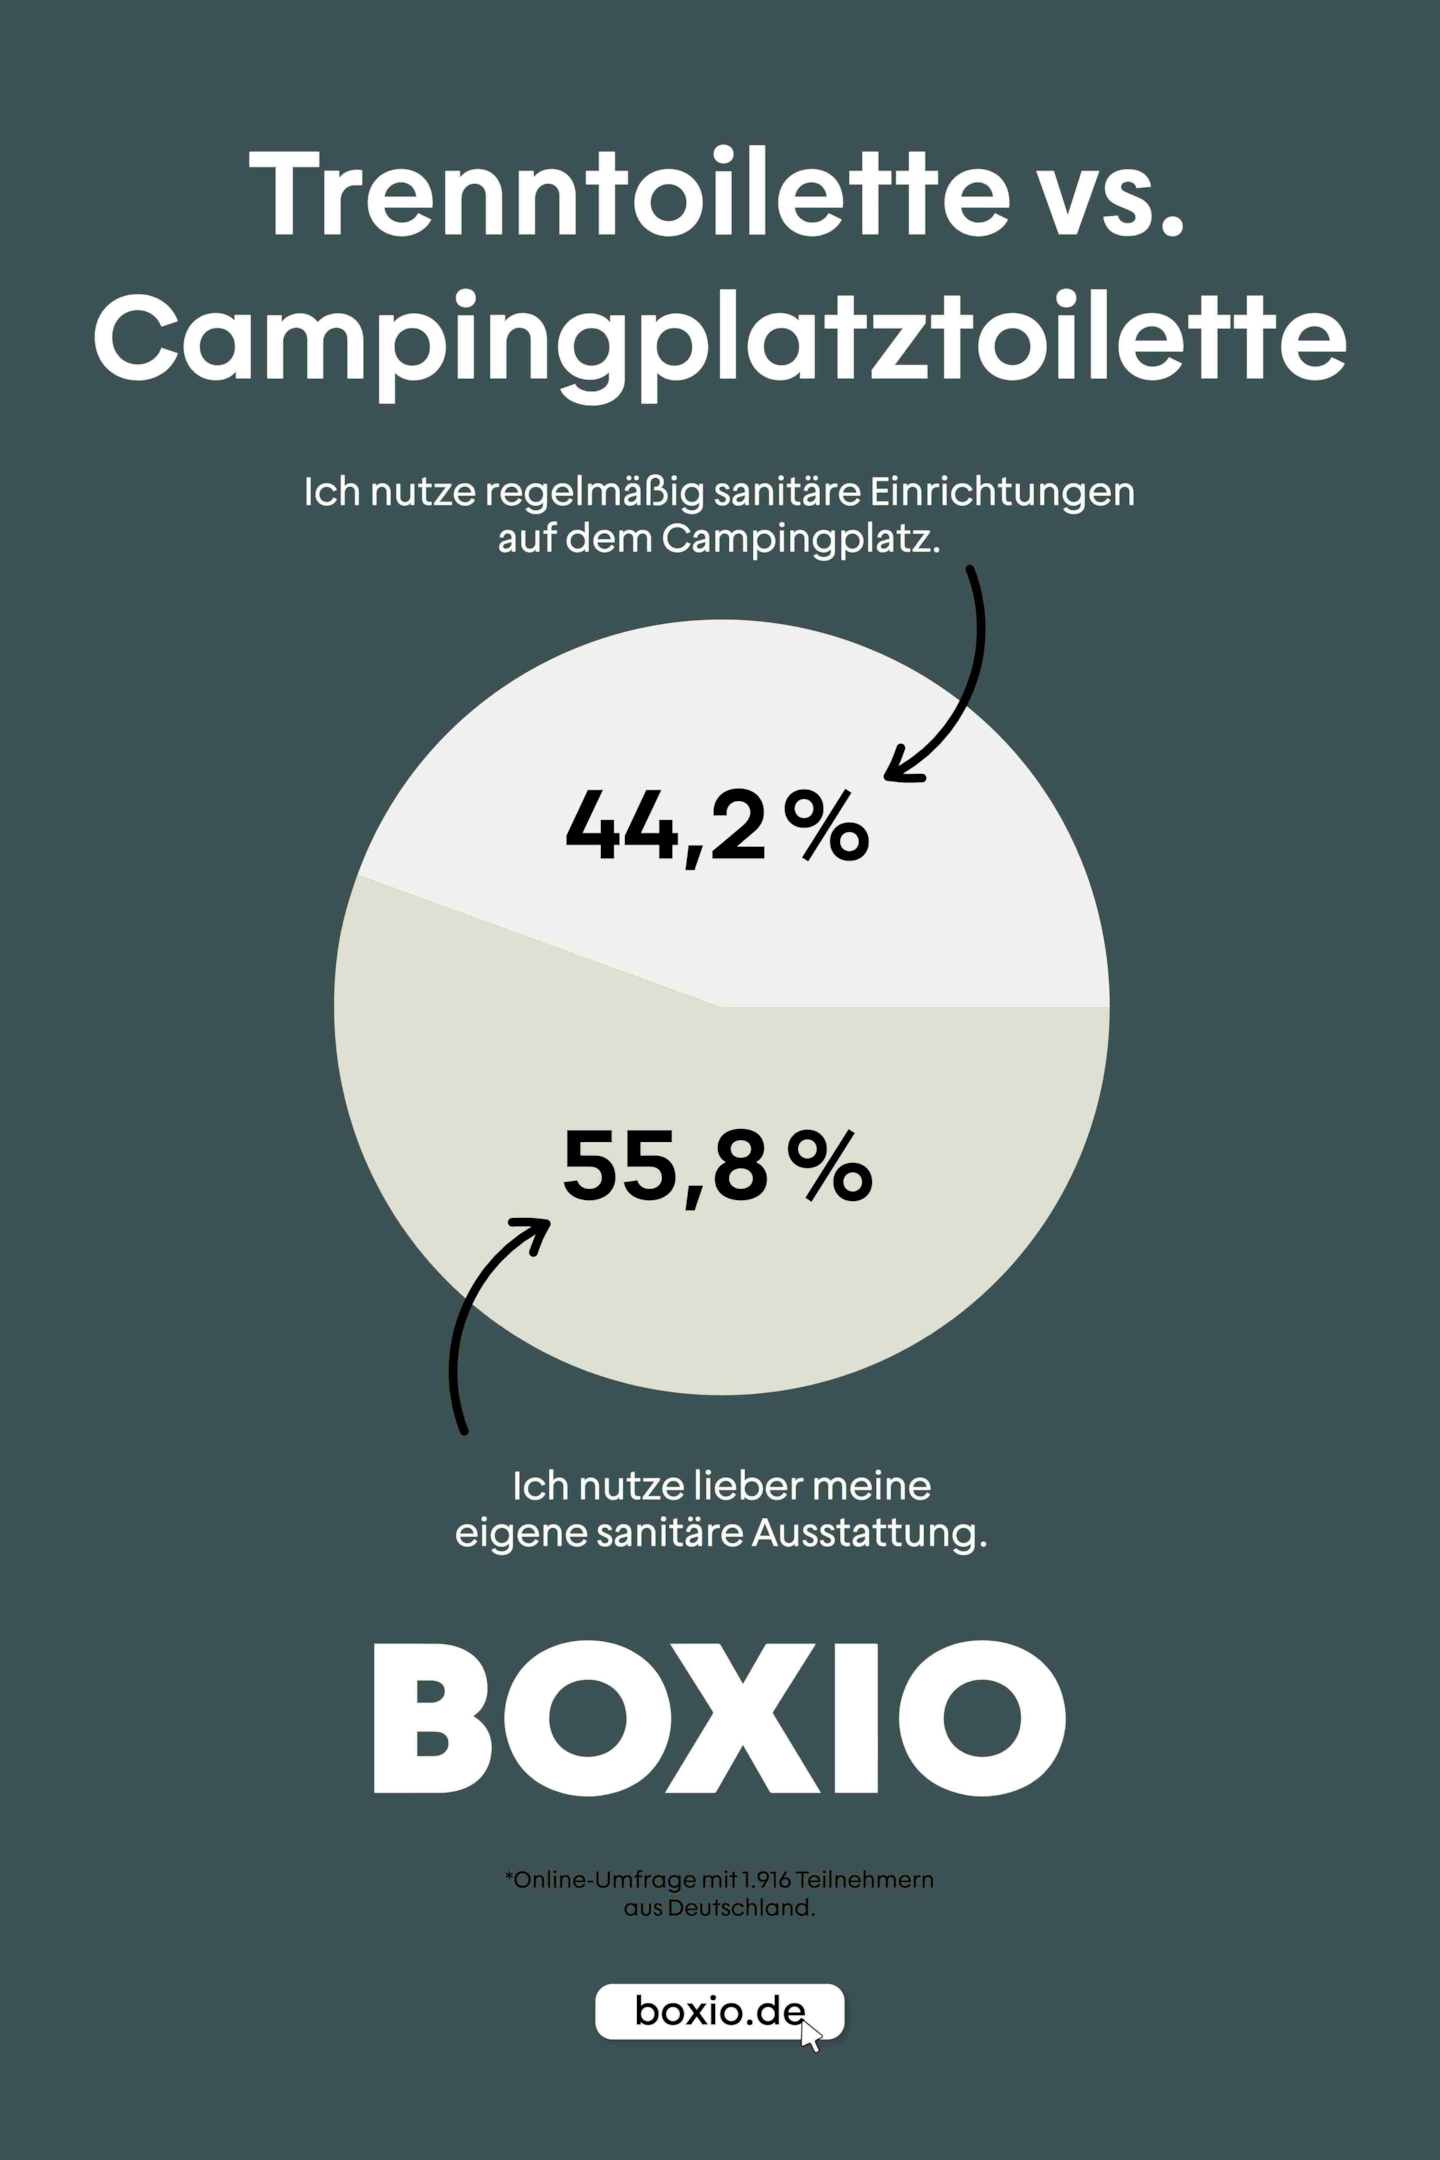 Grafik Trenntoilette vs. Campingplatztoilette, Kreisdiagramm: 55,8 Prozent nutzen lieber ihre eigene sanitäre Ausstattung